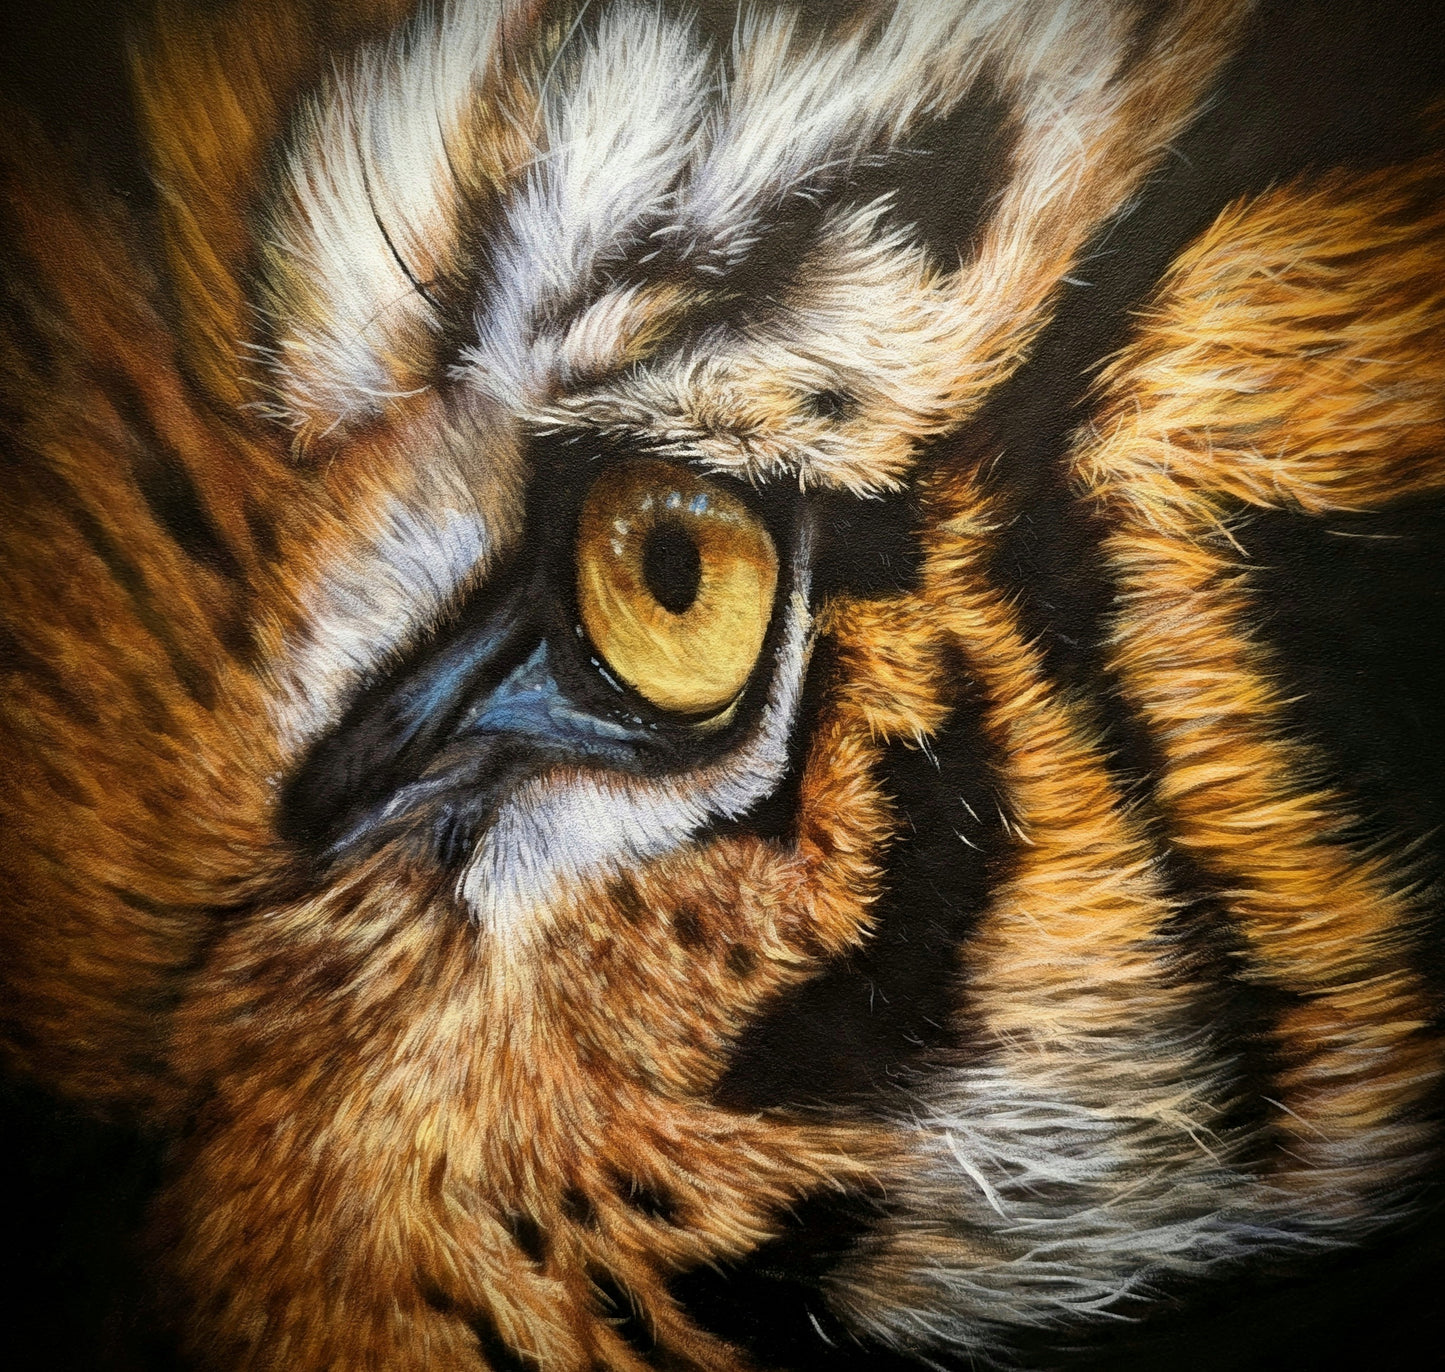 Tigers eye (acrylics)